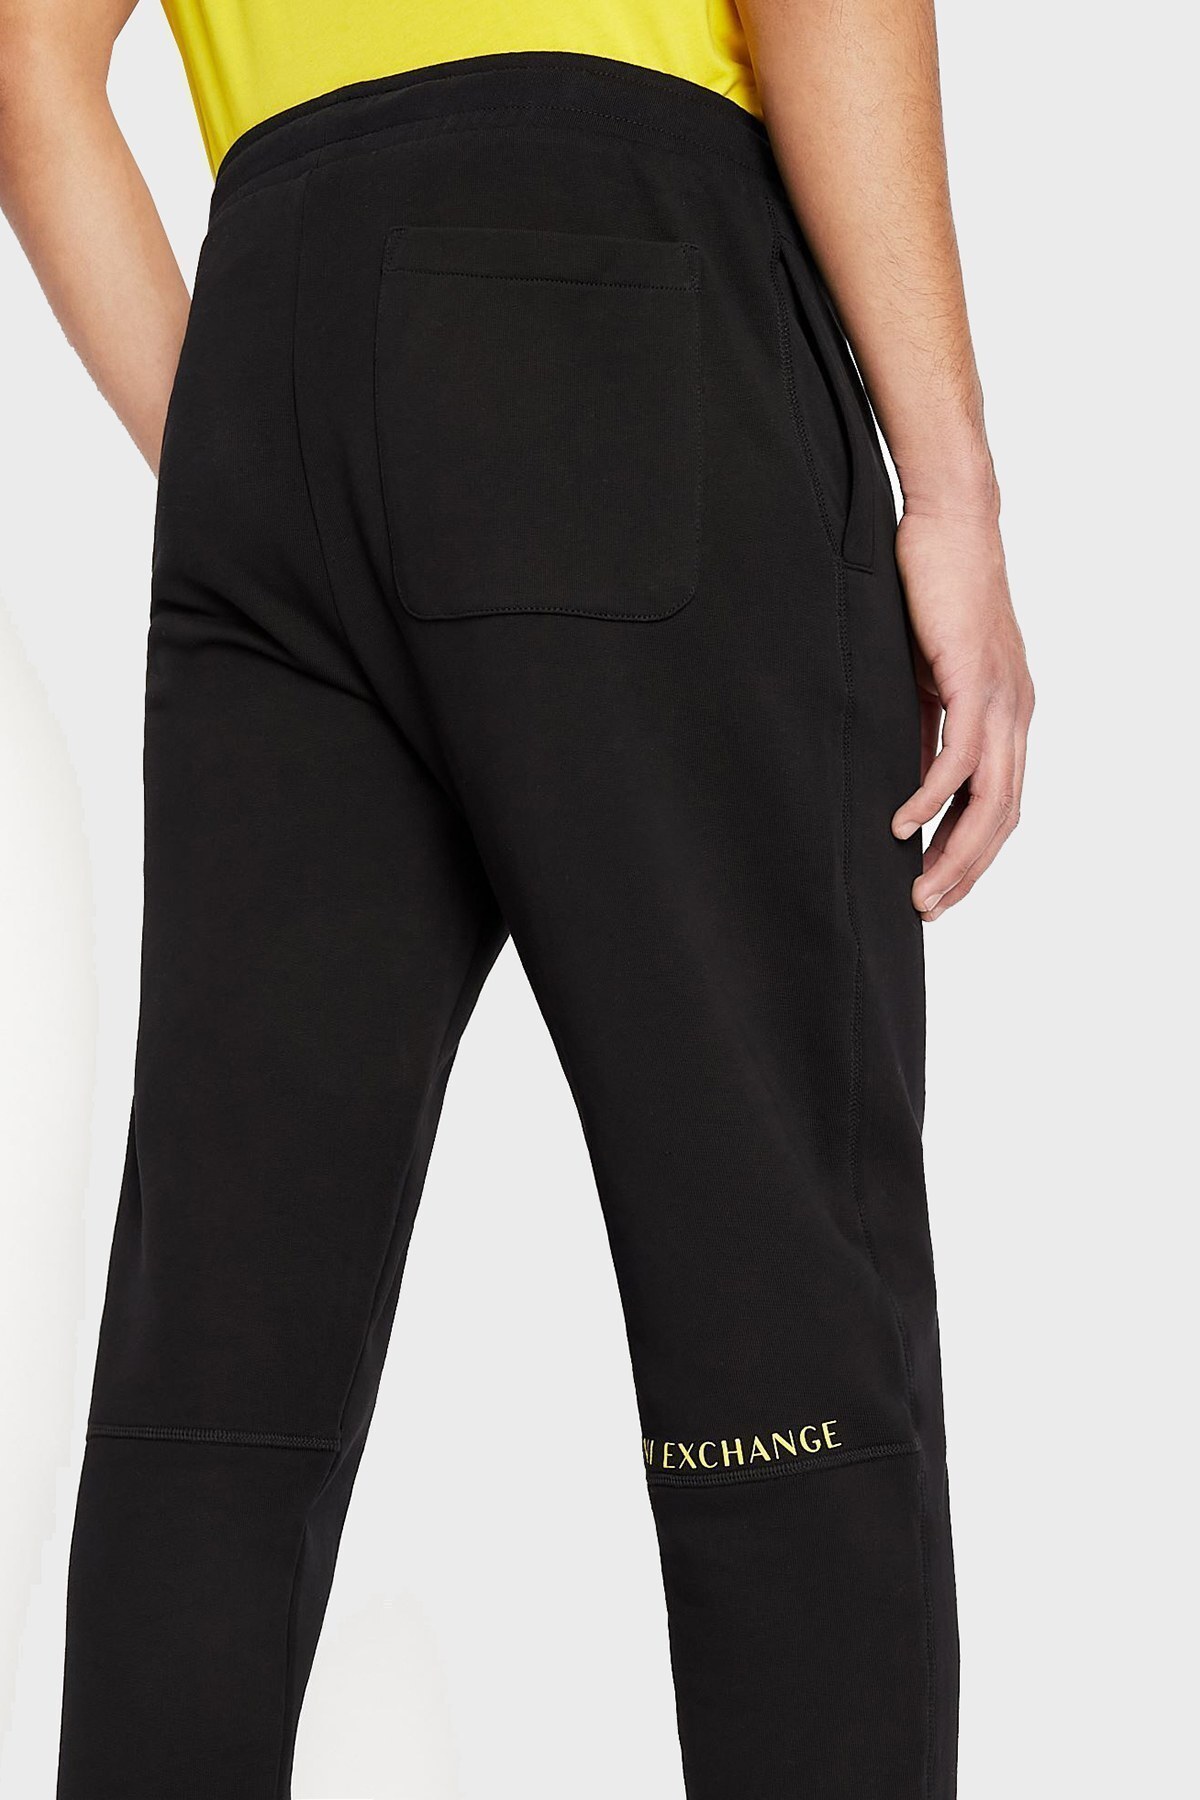 Armani Exchange Belden Bağlamalı % 100 Pamuk Regular Fit Erkek Pantolon 3LZPAV ZJ3UZ 1200 SİYAH